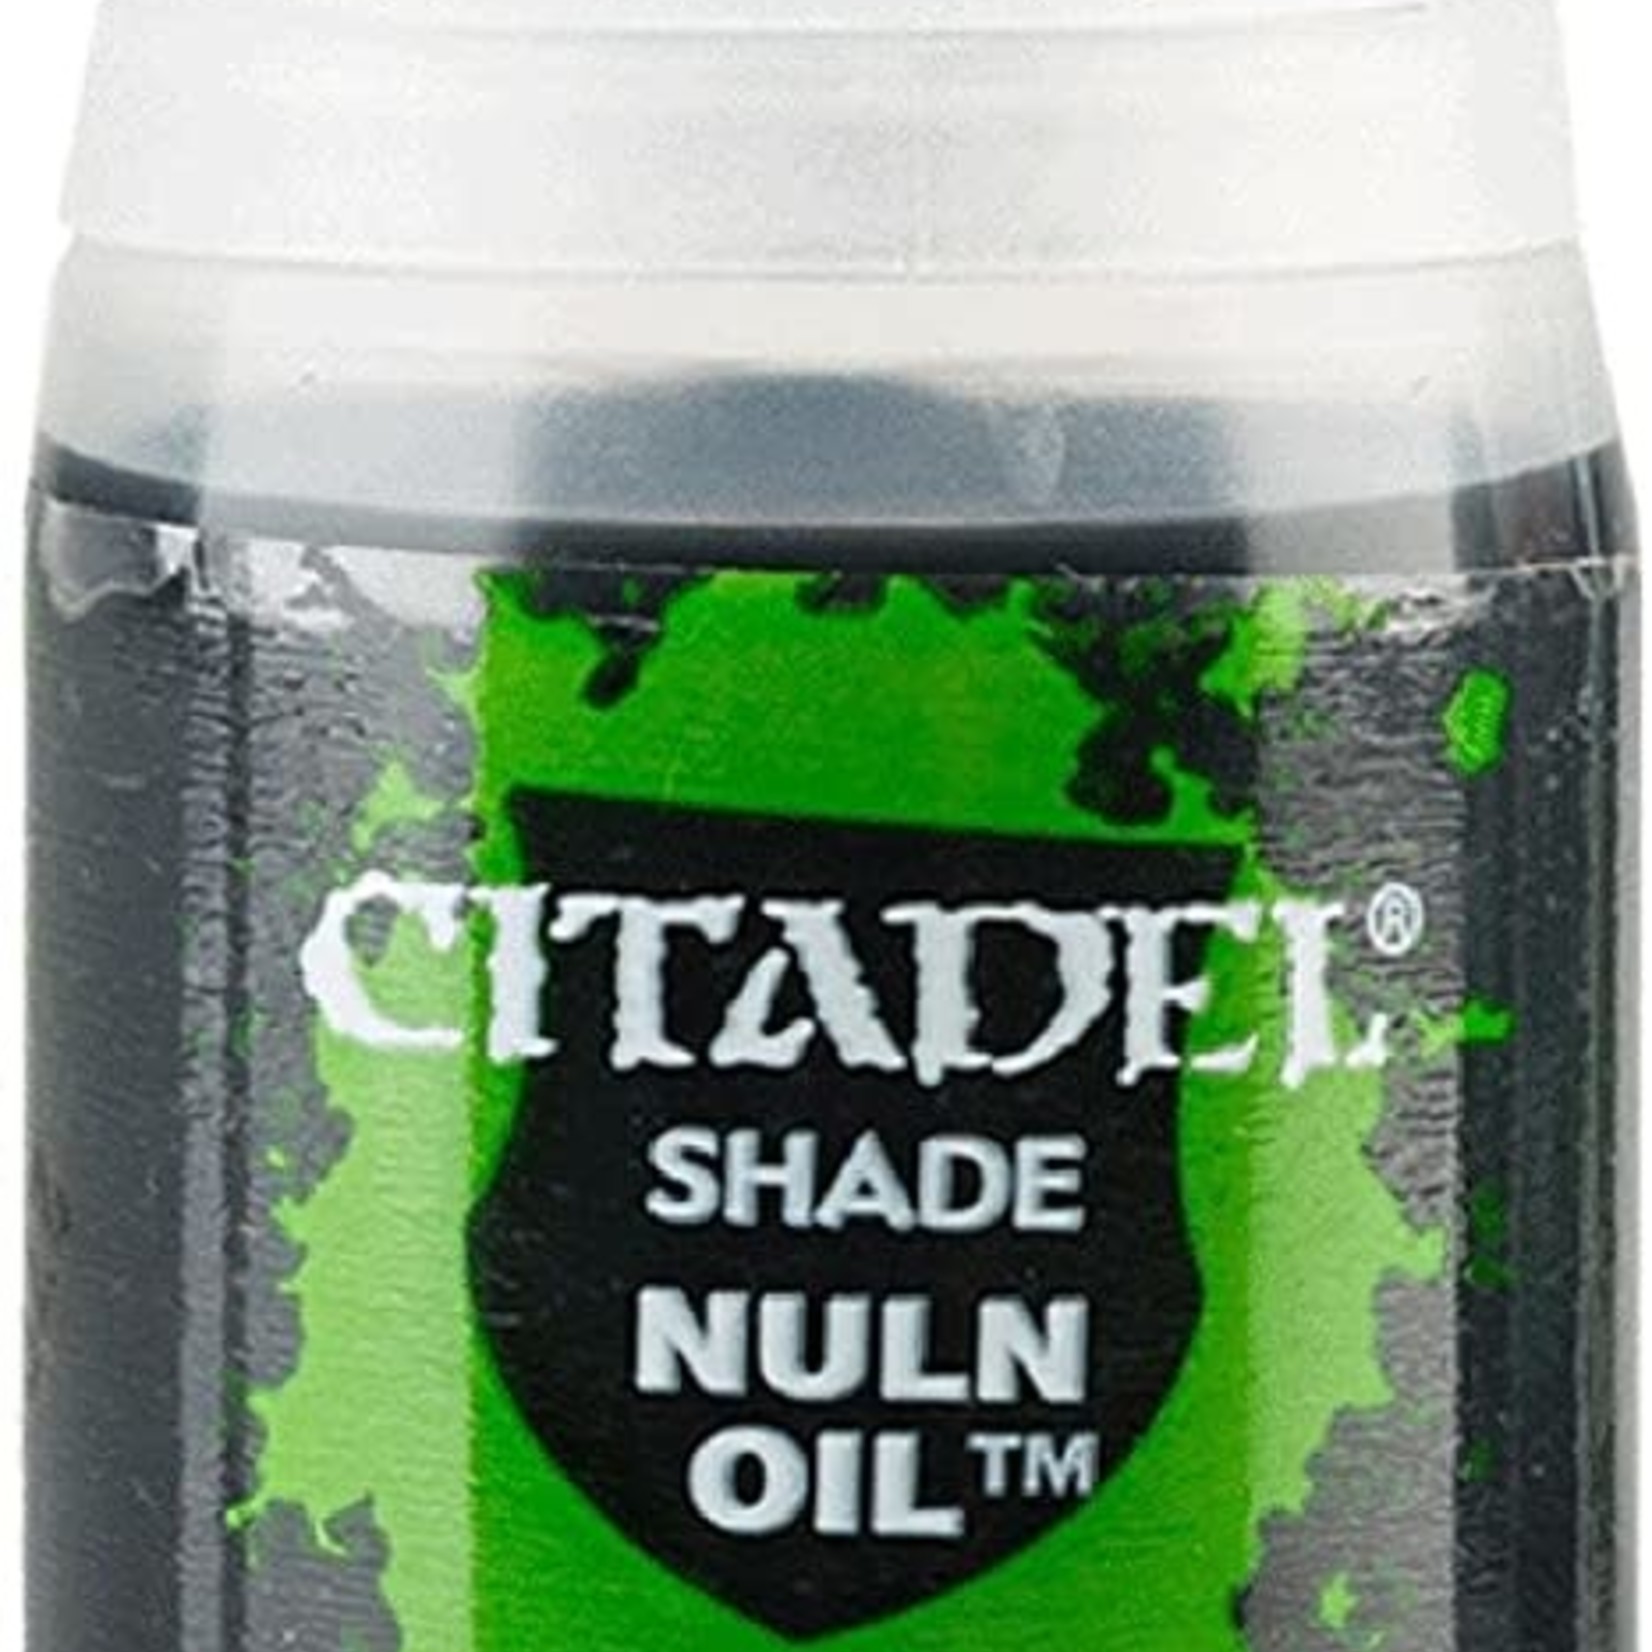 Games Workshop Citadel - Shade - Nuln Oil